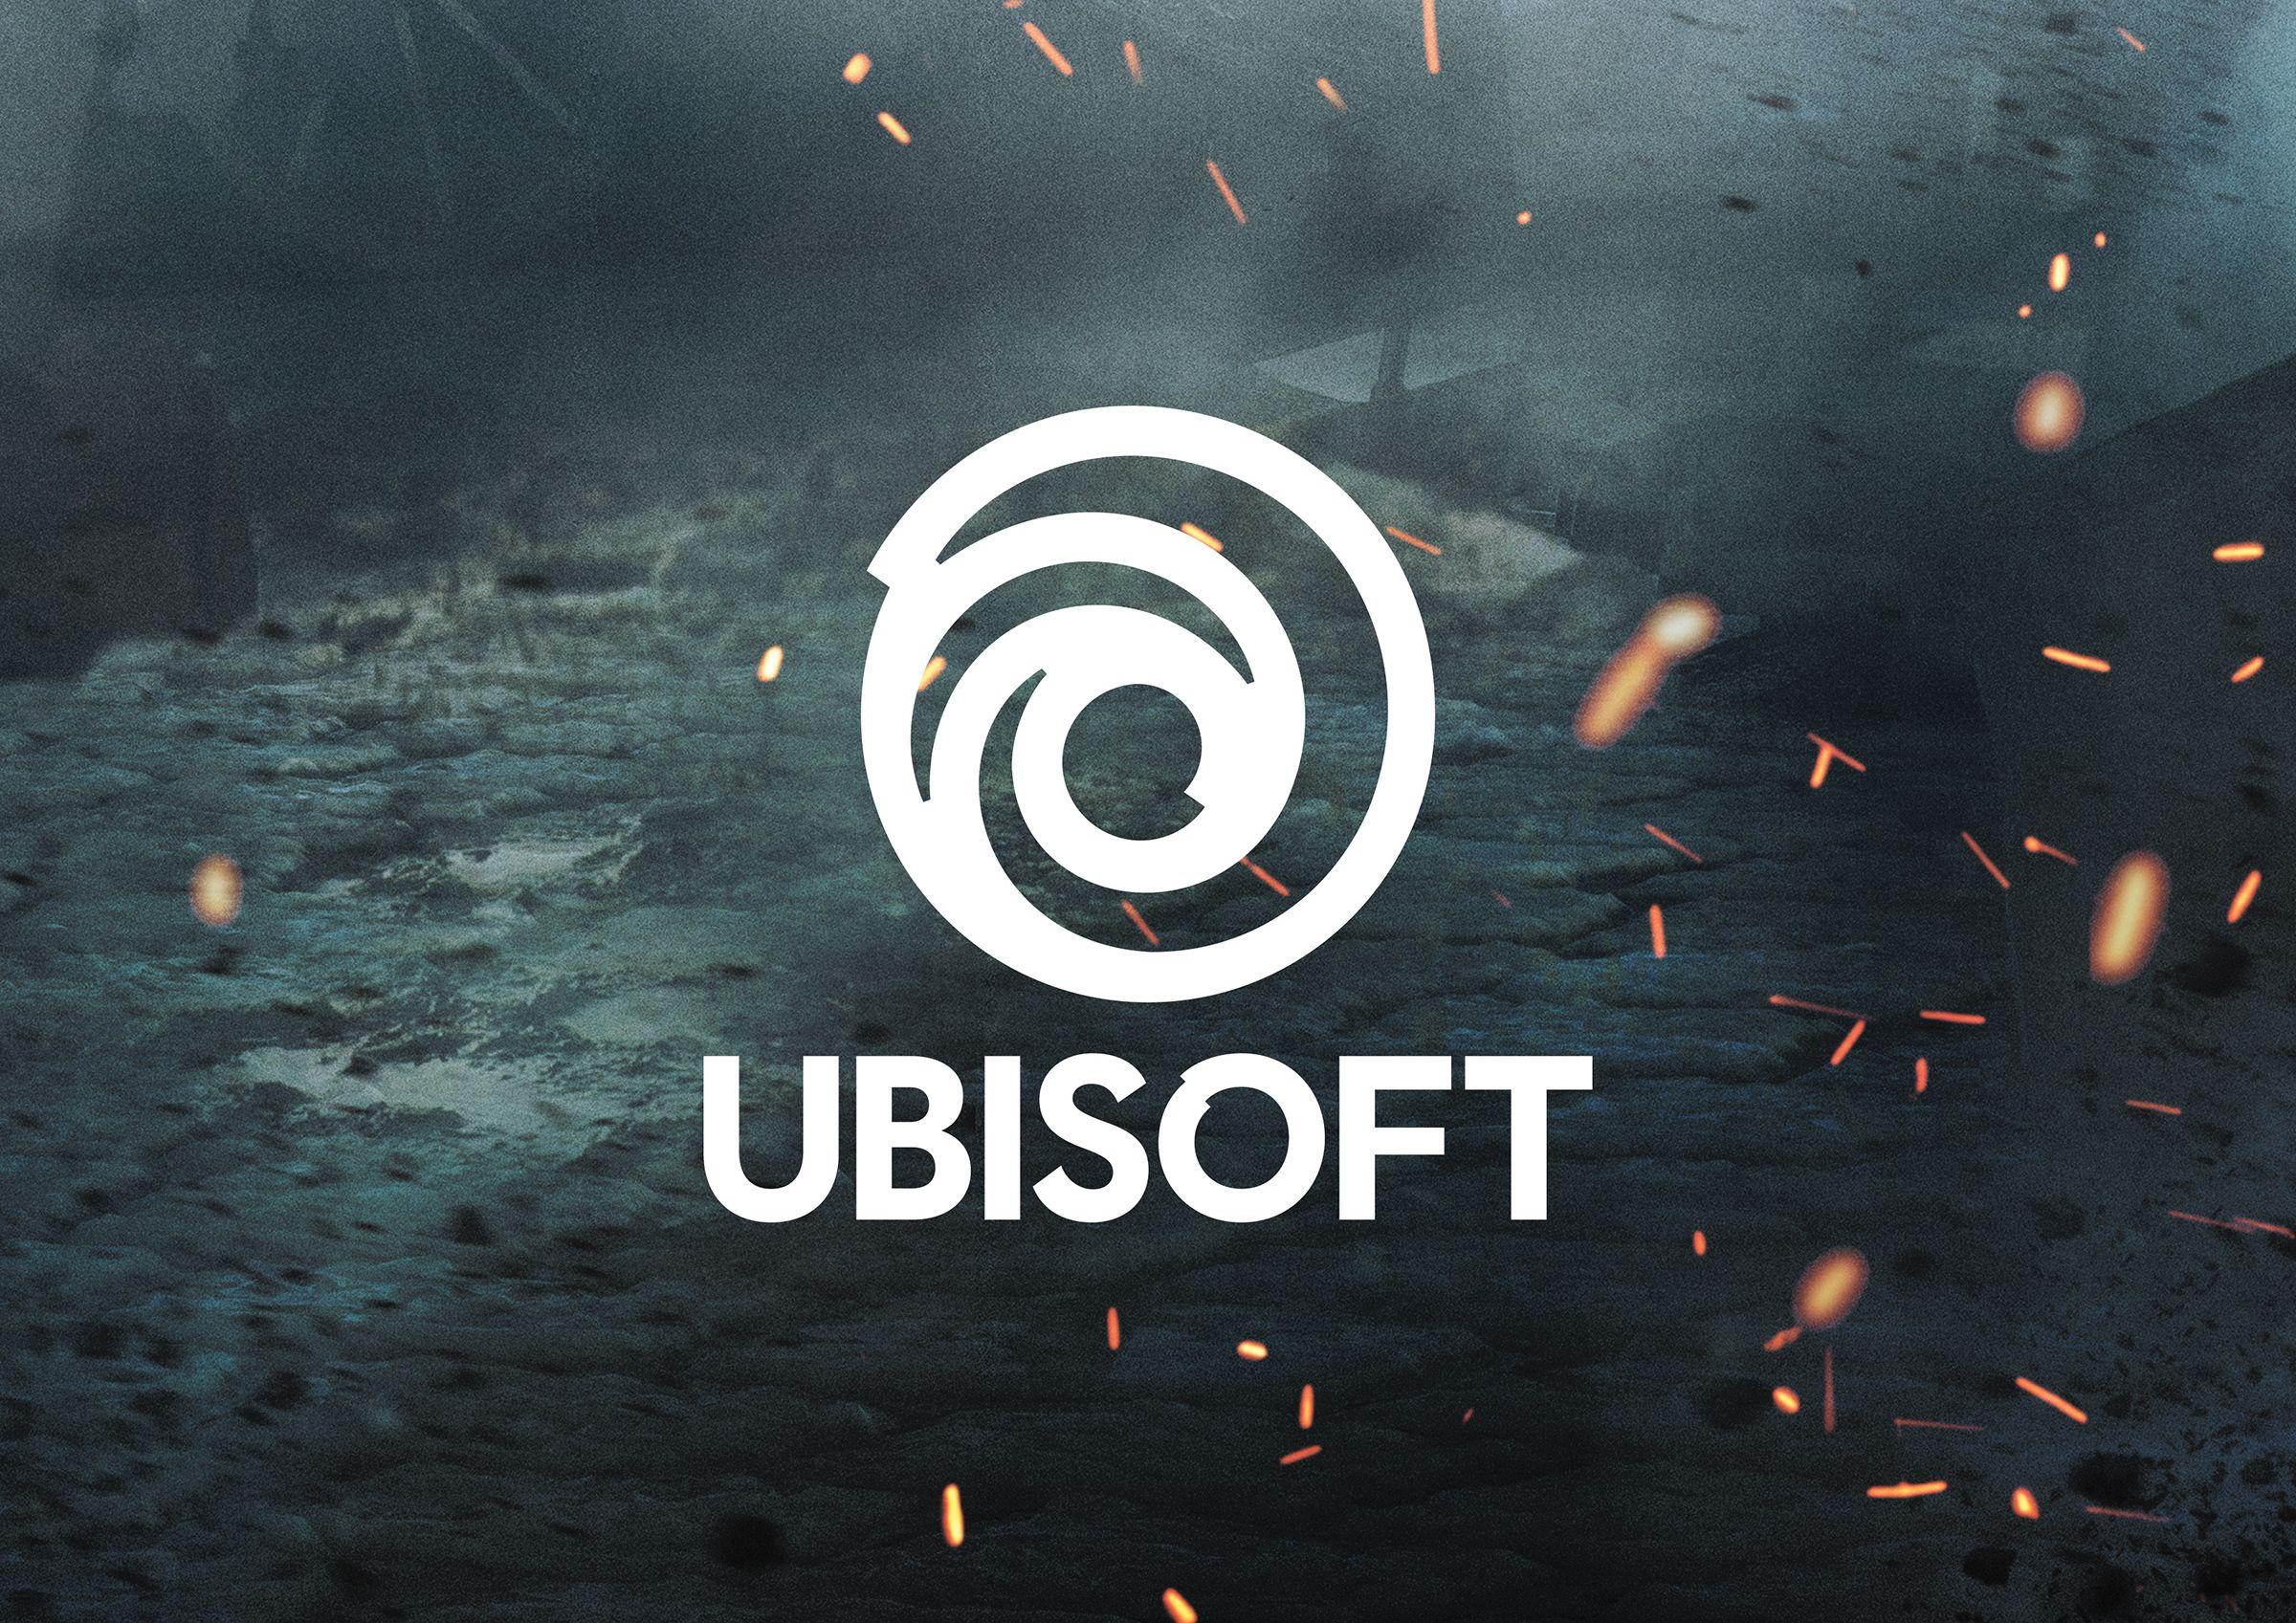 Ubisoft New Logo HD Games, 4k Wallpaper, Image, Background